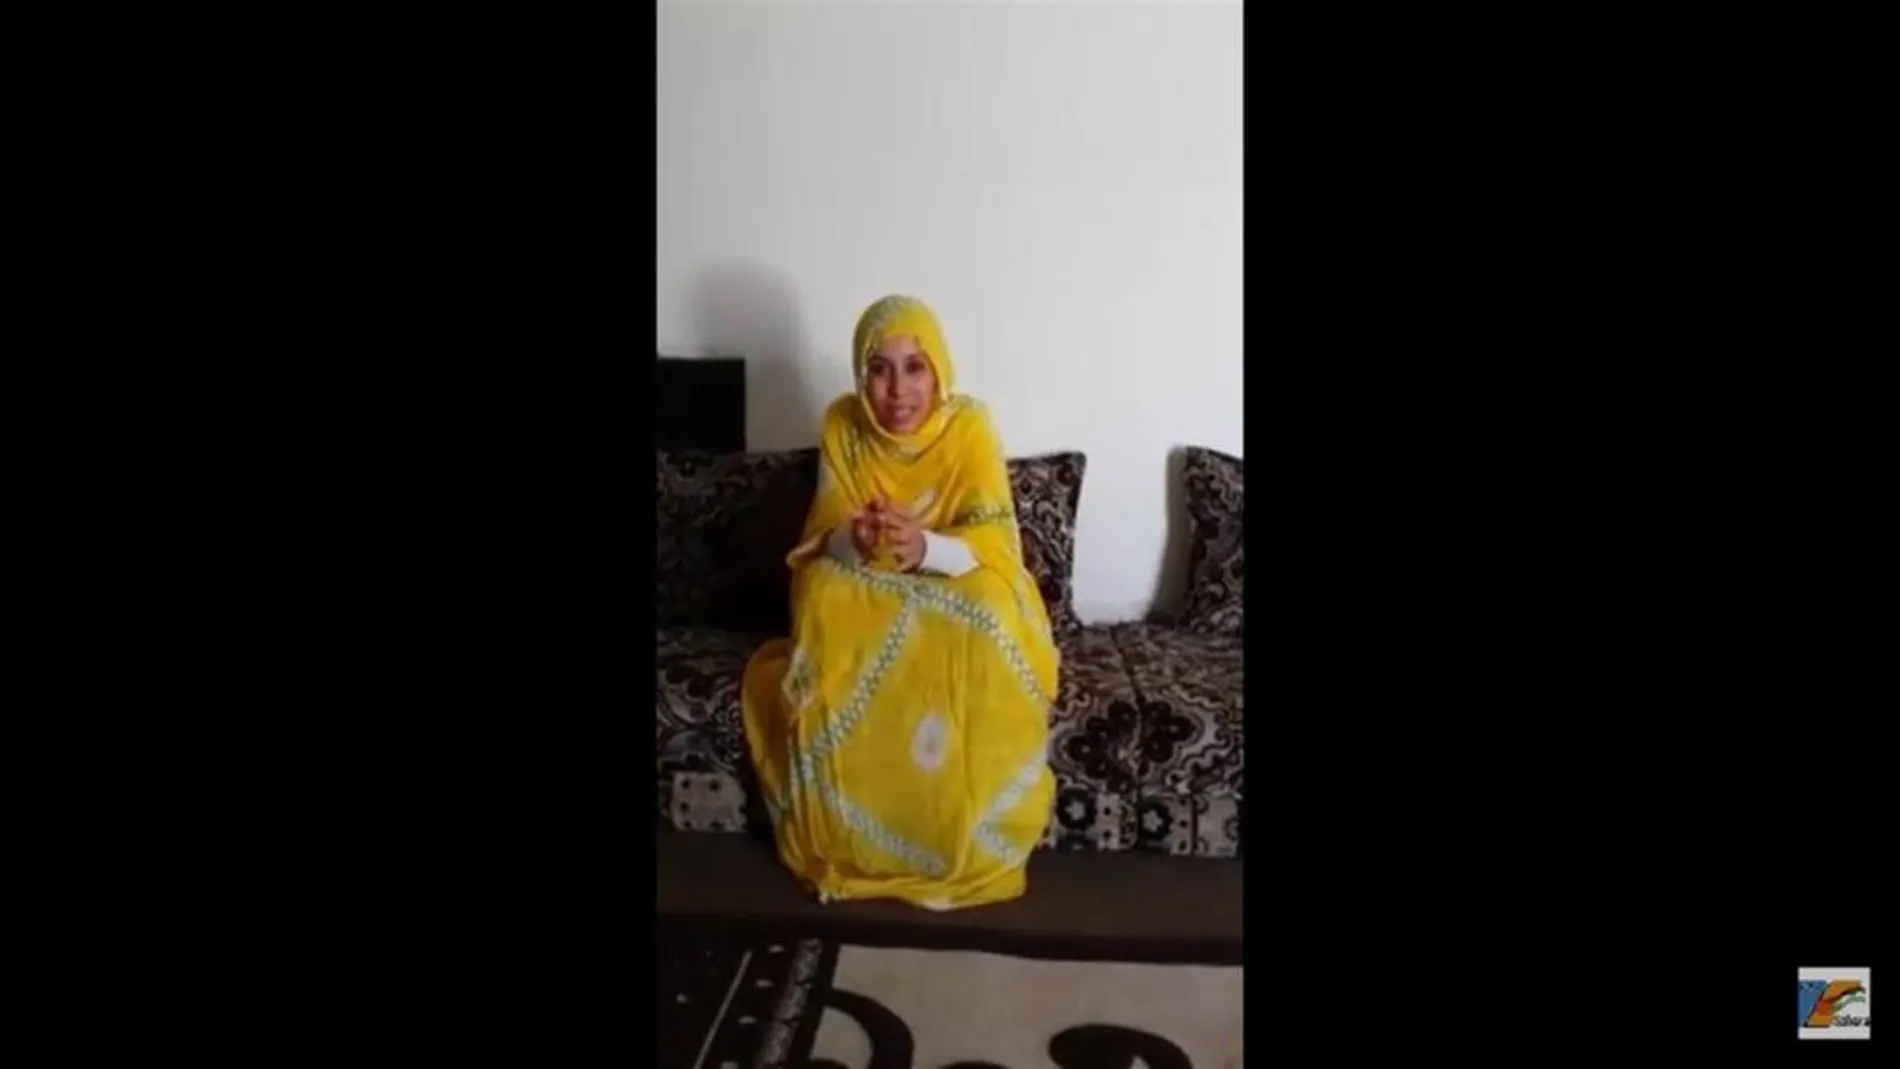 La joven natural de Sáhara Occidental vuelven a negar la retención que denuncian sus padres adoptivos españoles / Foto: EP